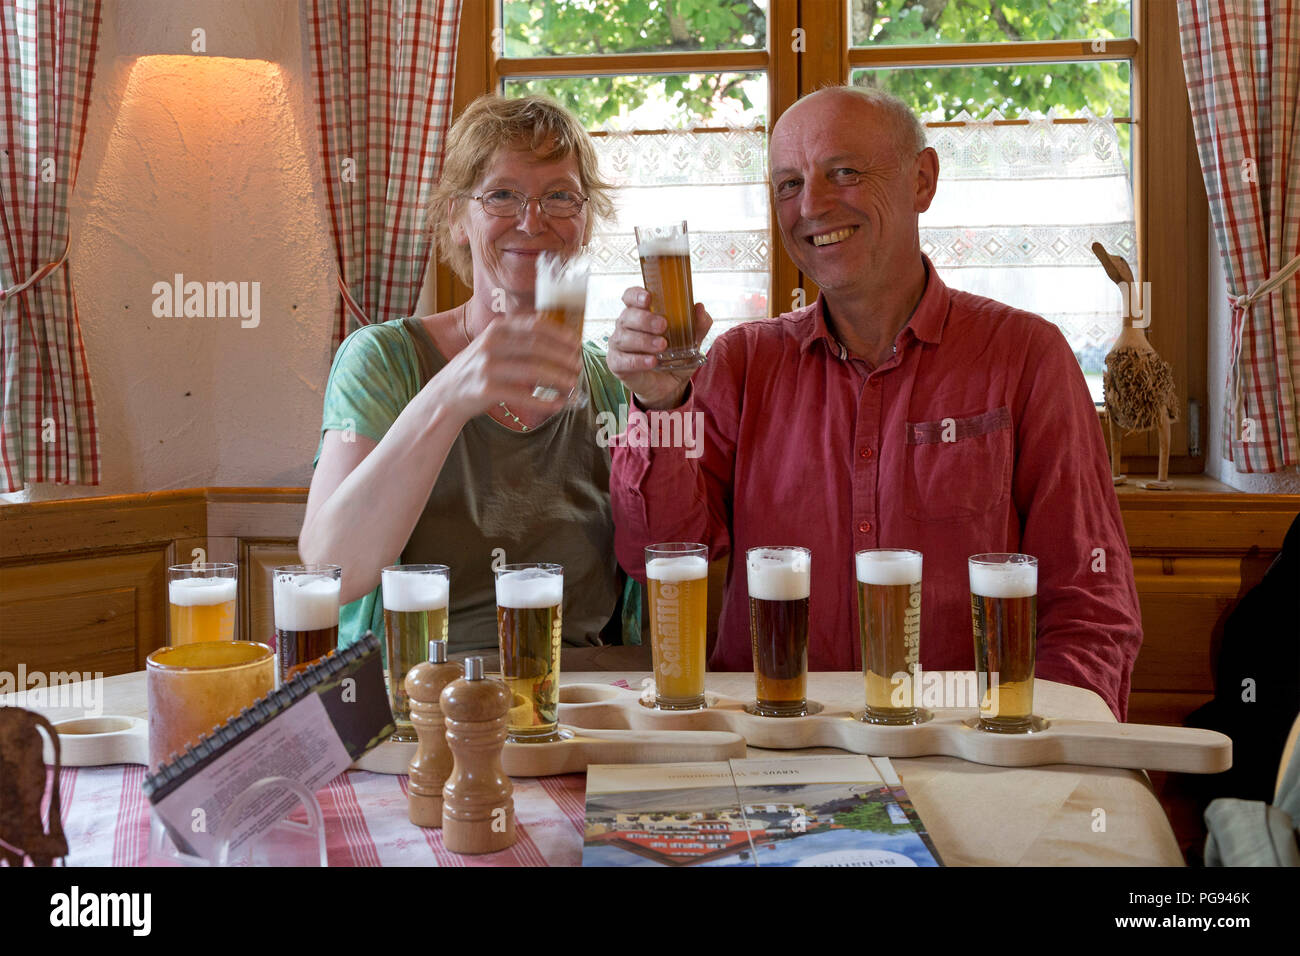 Dégustation de la bière au couple Brauereigasthof Schaeffler, Missen-Wilhams, Allgaeu, Bavaria, Germany Banque D'Images